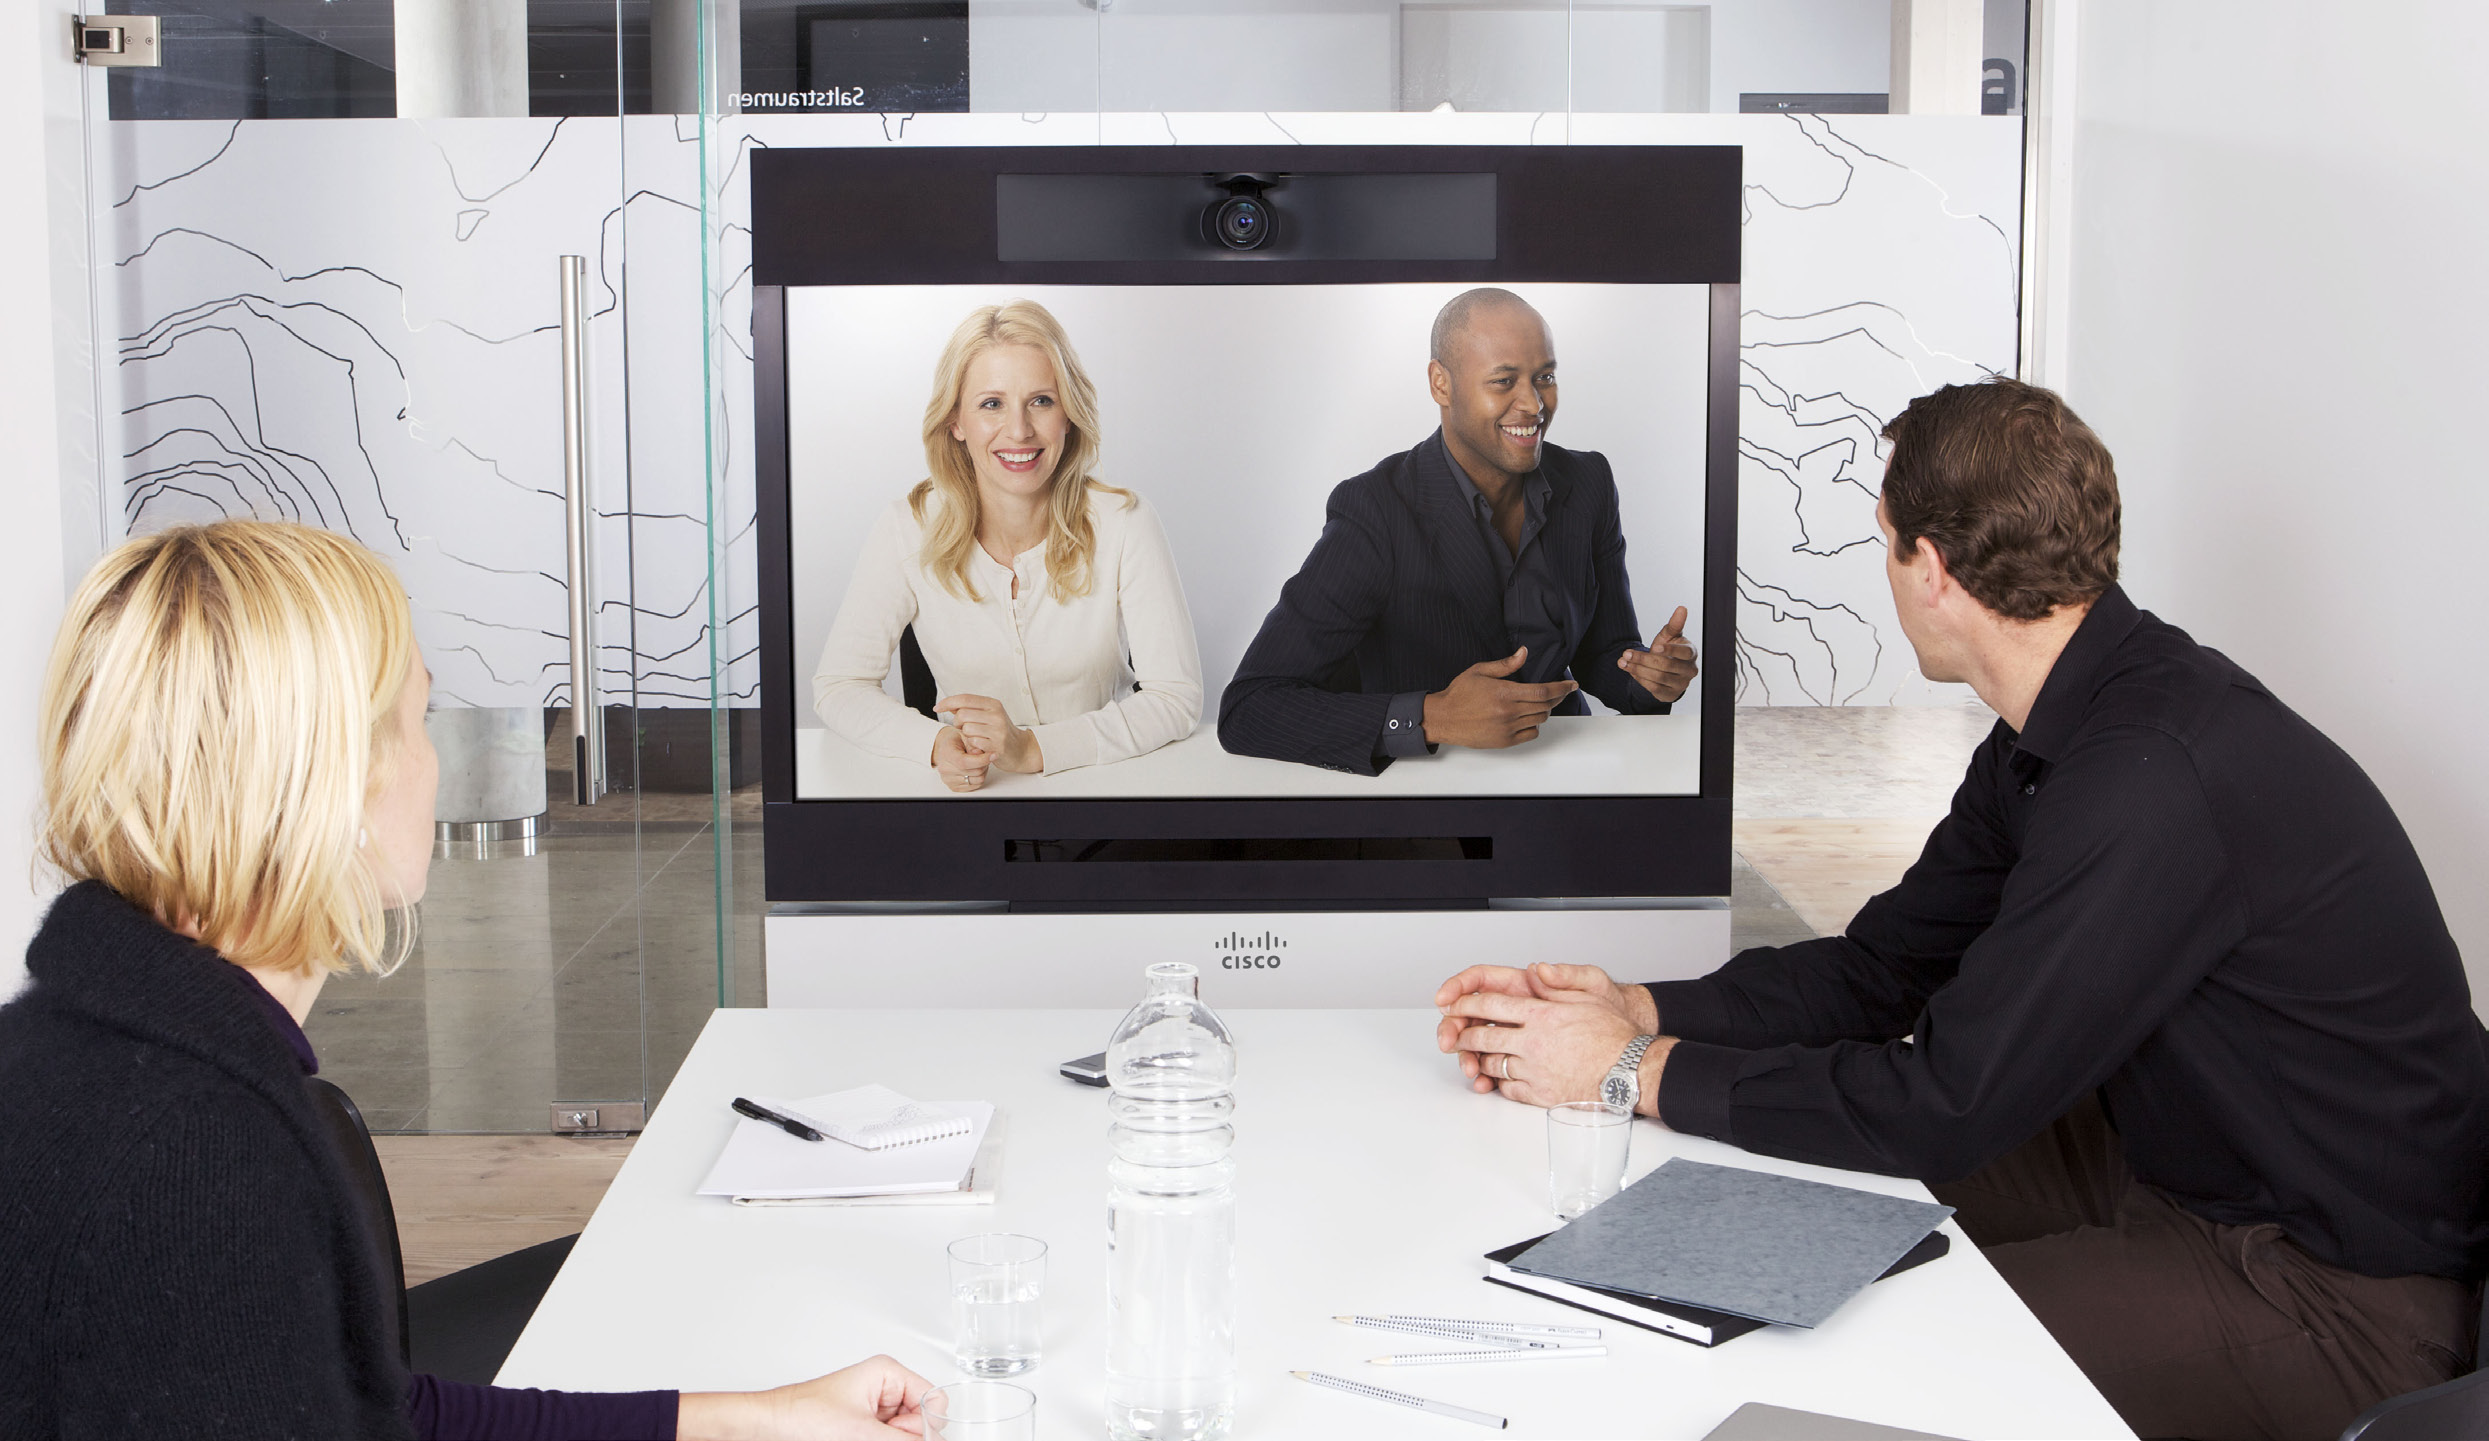 Optimale Nutzung Ihres Videokonferenzsystems Kurzanleitung In dieser Kurzanleitung finden Sie wesentliche Informationen, die dazu beitragen sollen, die Anwendung und Durchführung von Videokonferenzen